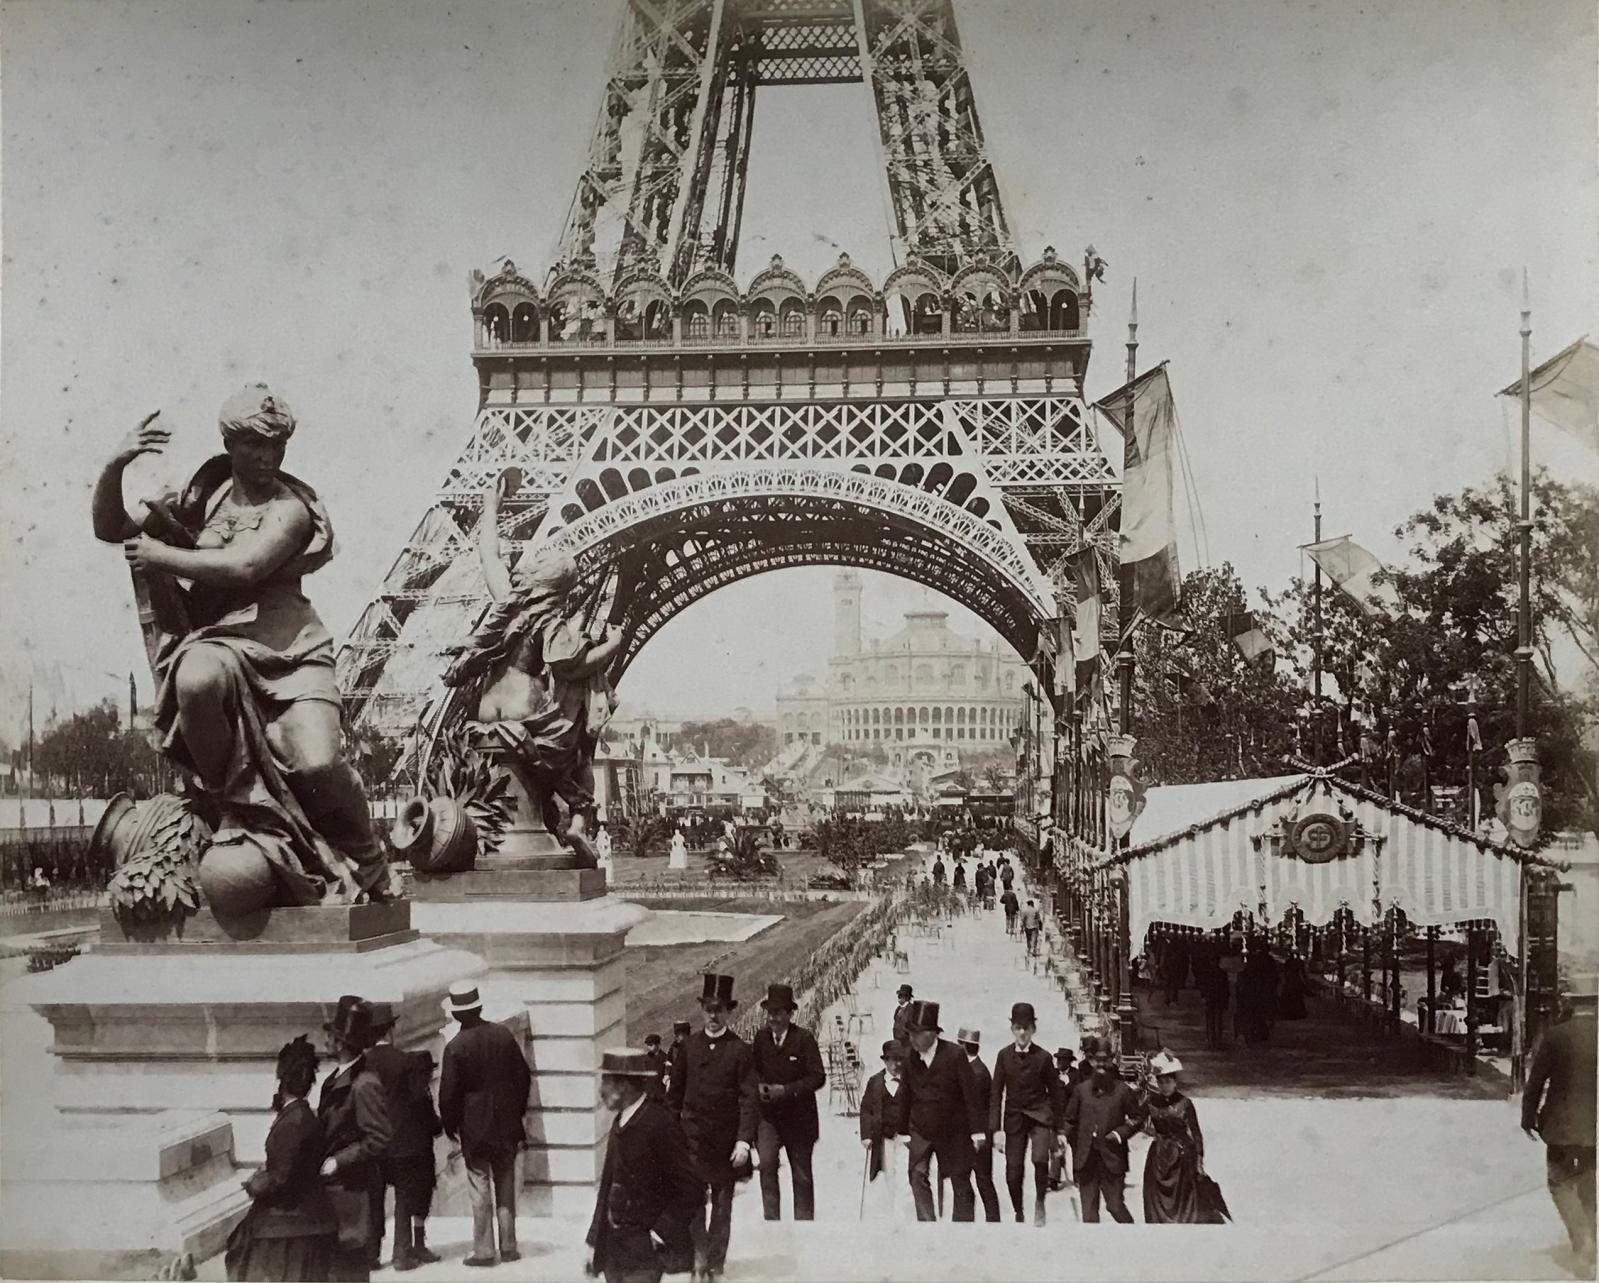 L’univers parisien de 1889